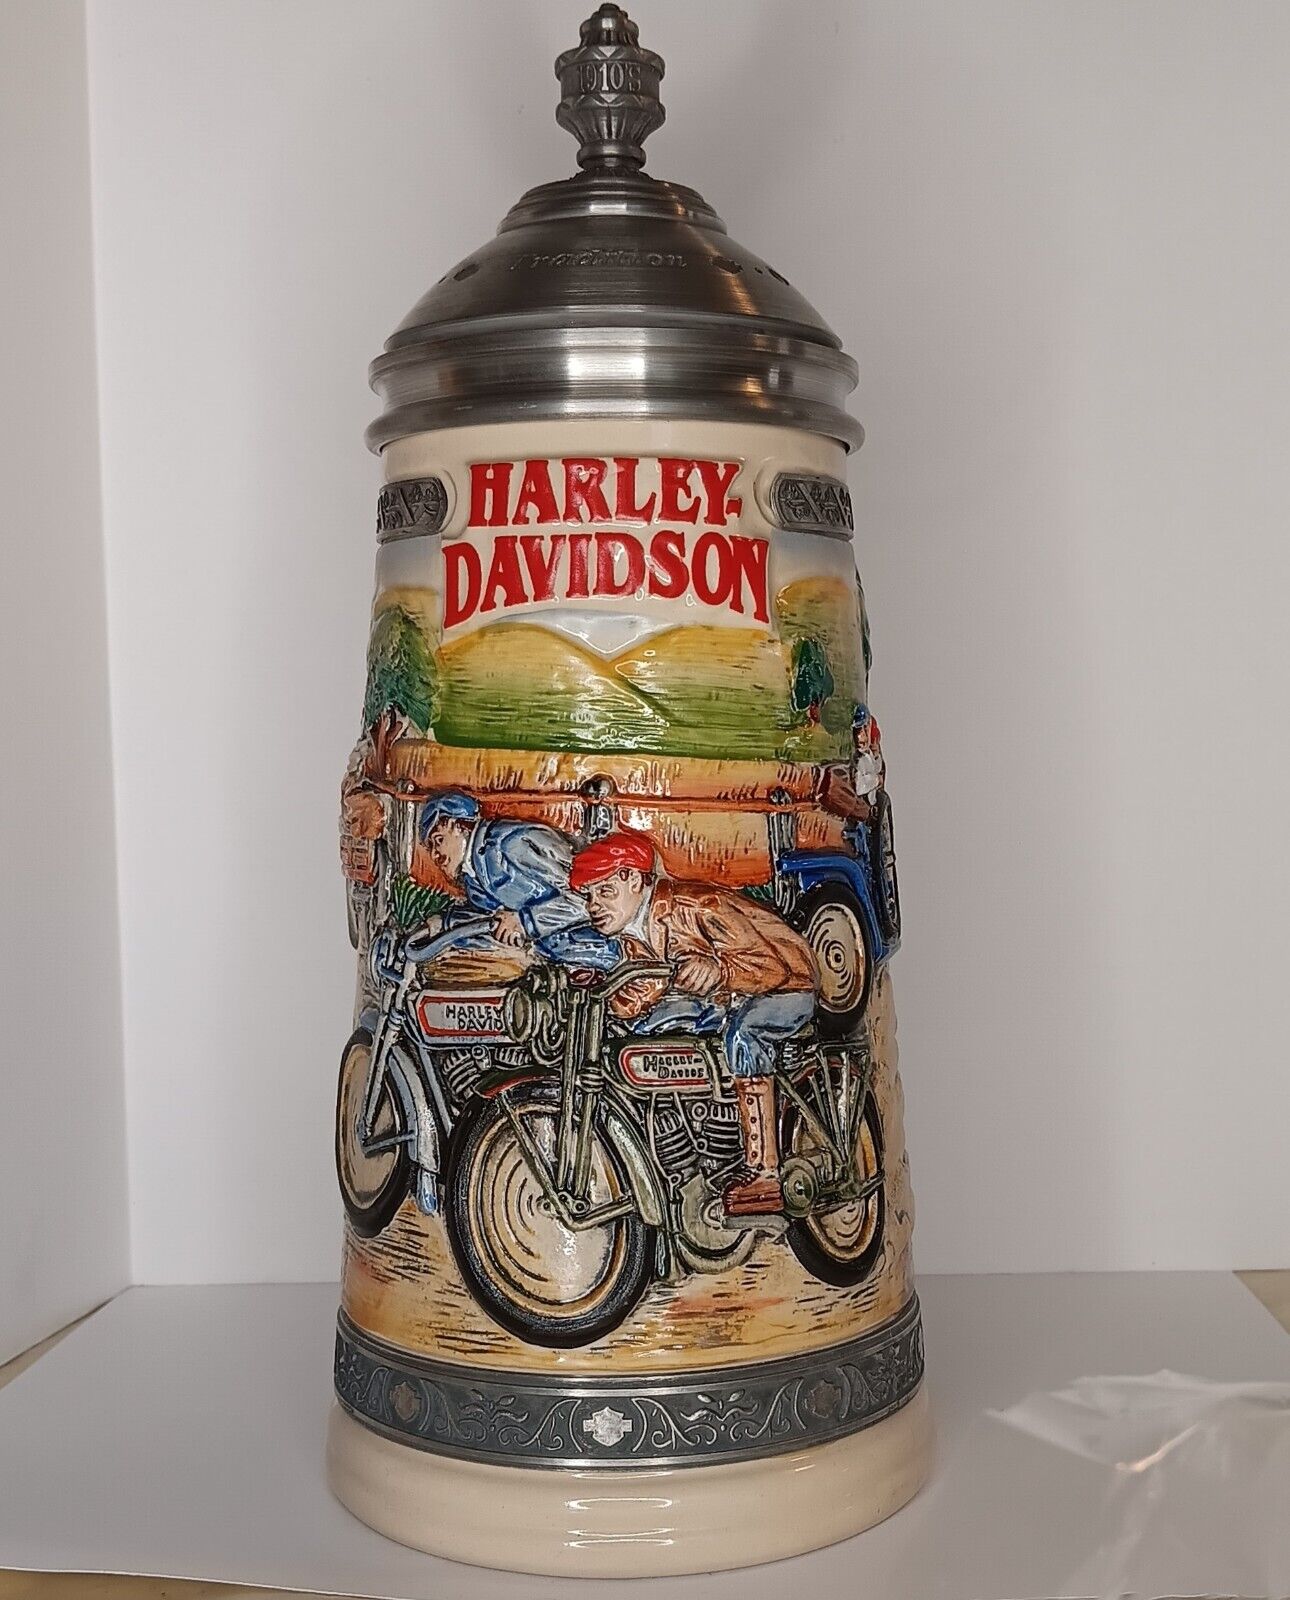 Harley Davidson Rare Limited Edition Lidded Beer Stein Vintage SP Gerz Ceramic